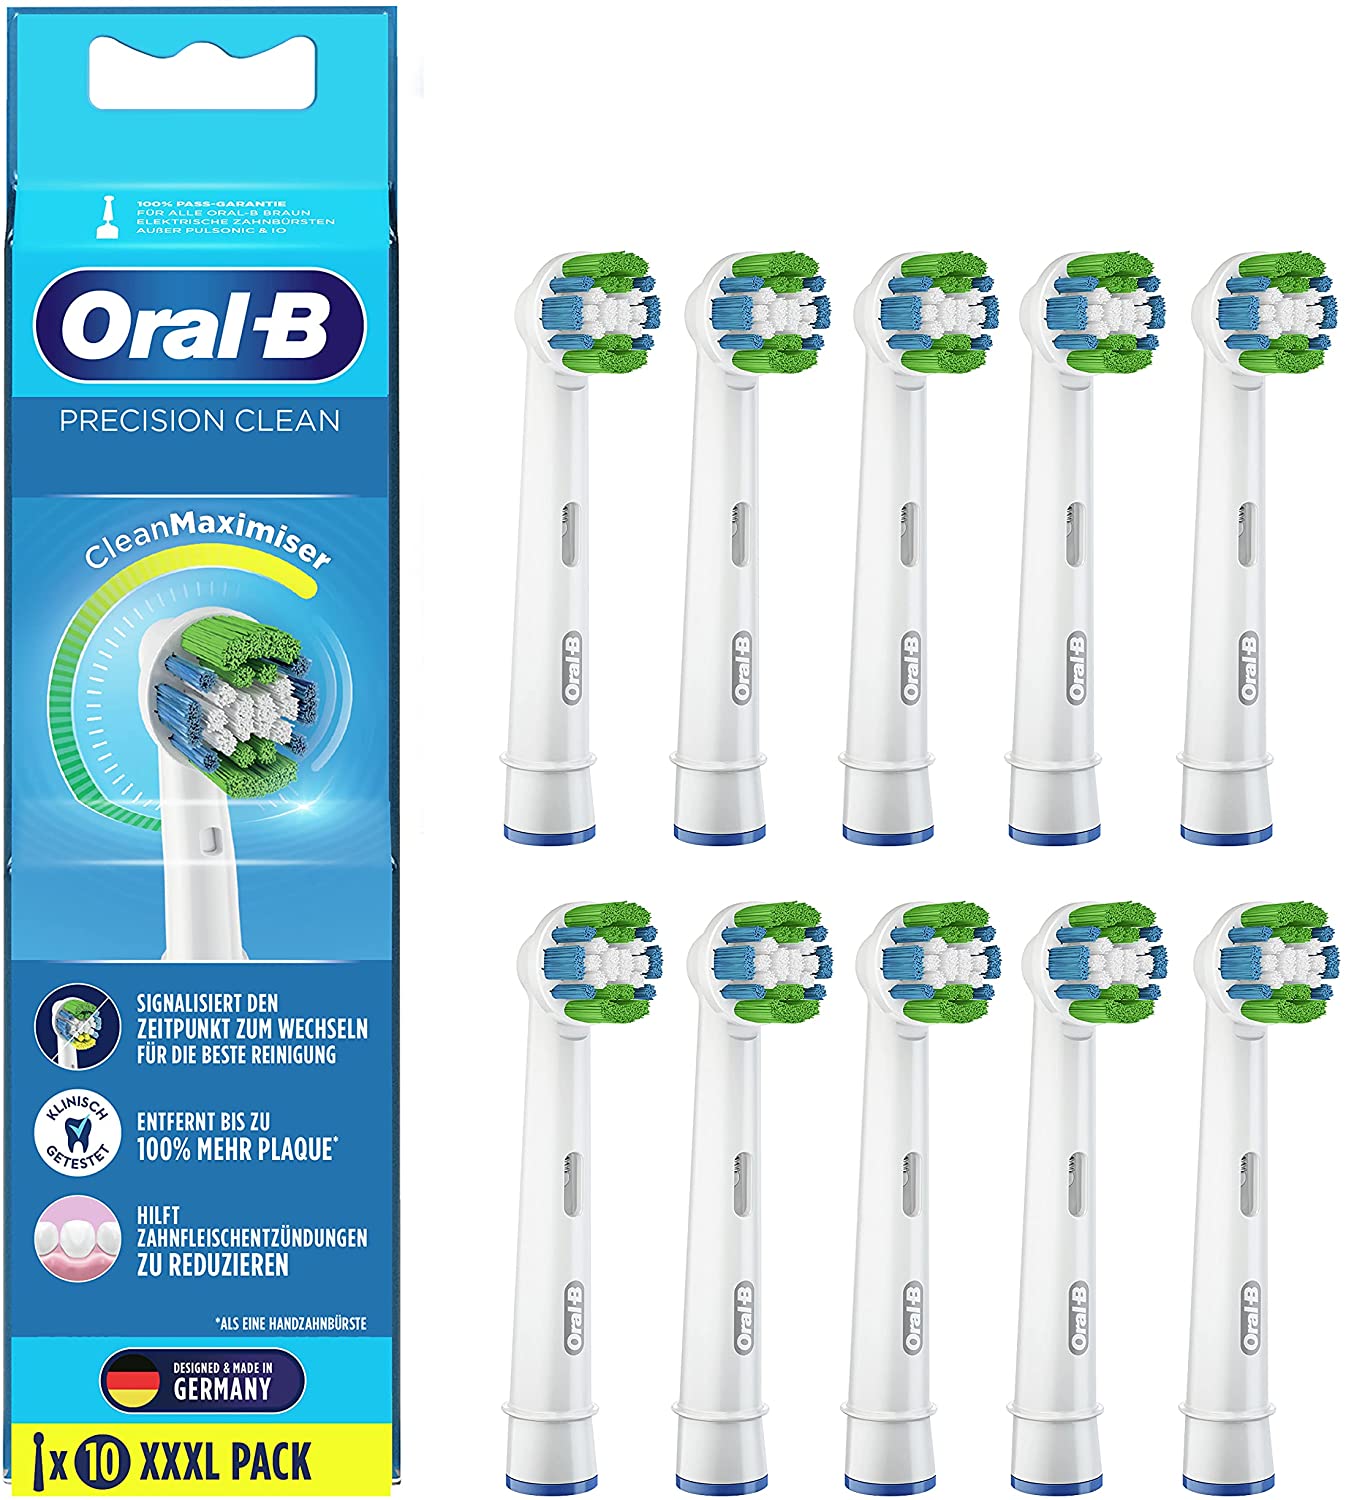 8x Oral-B Precision Clean Aufsteckbürsten für 26€) (statt 15,99€